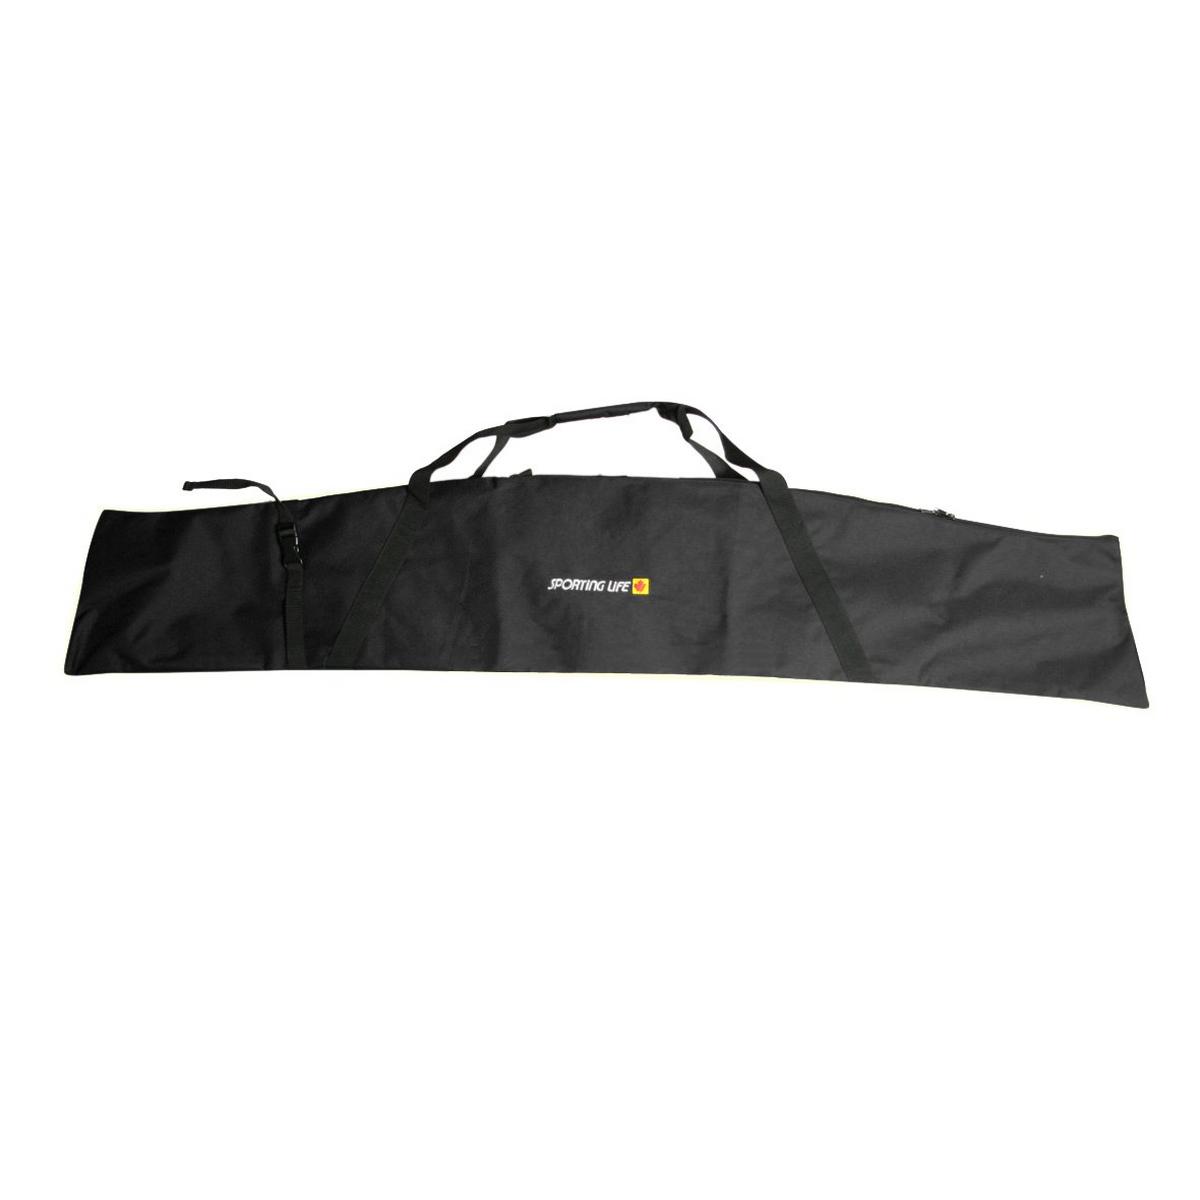 Single Basic Ski Bag (195cm)